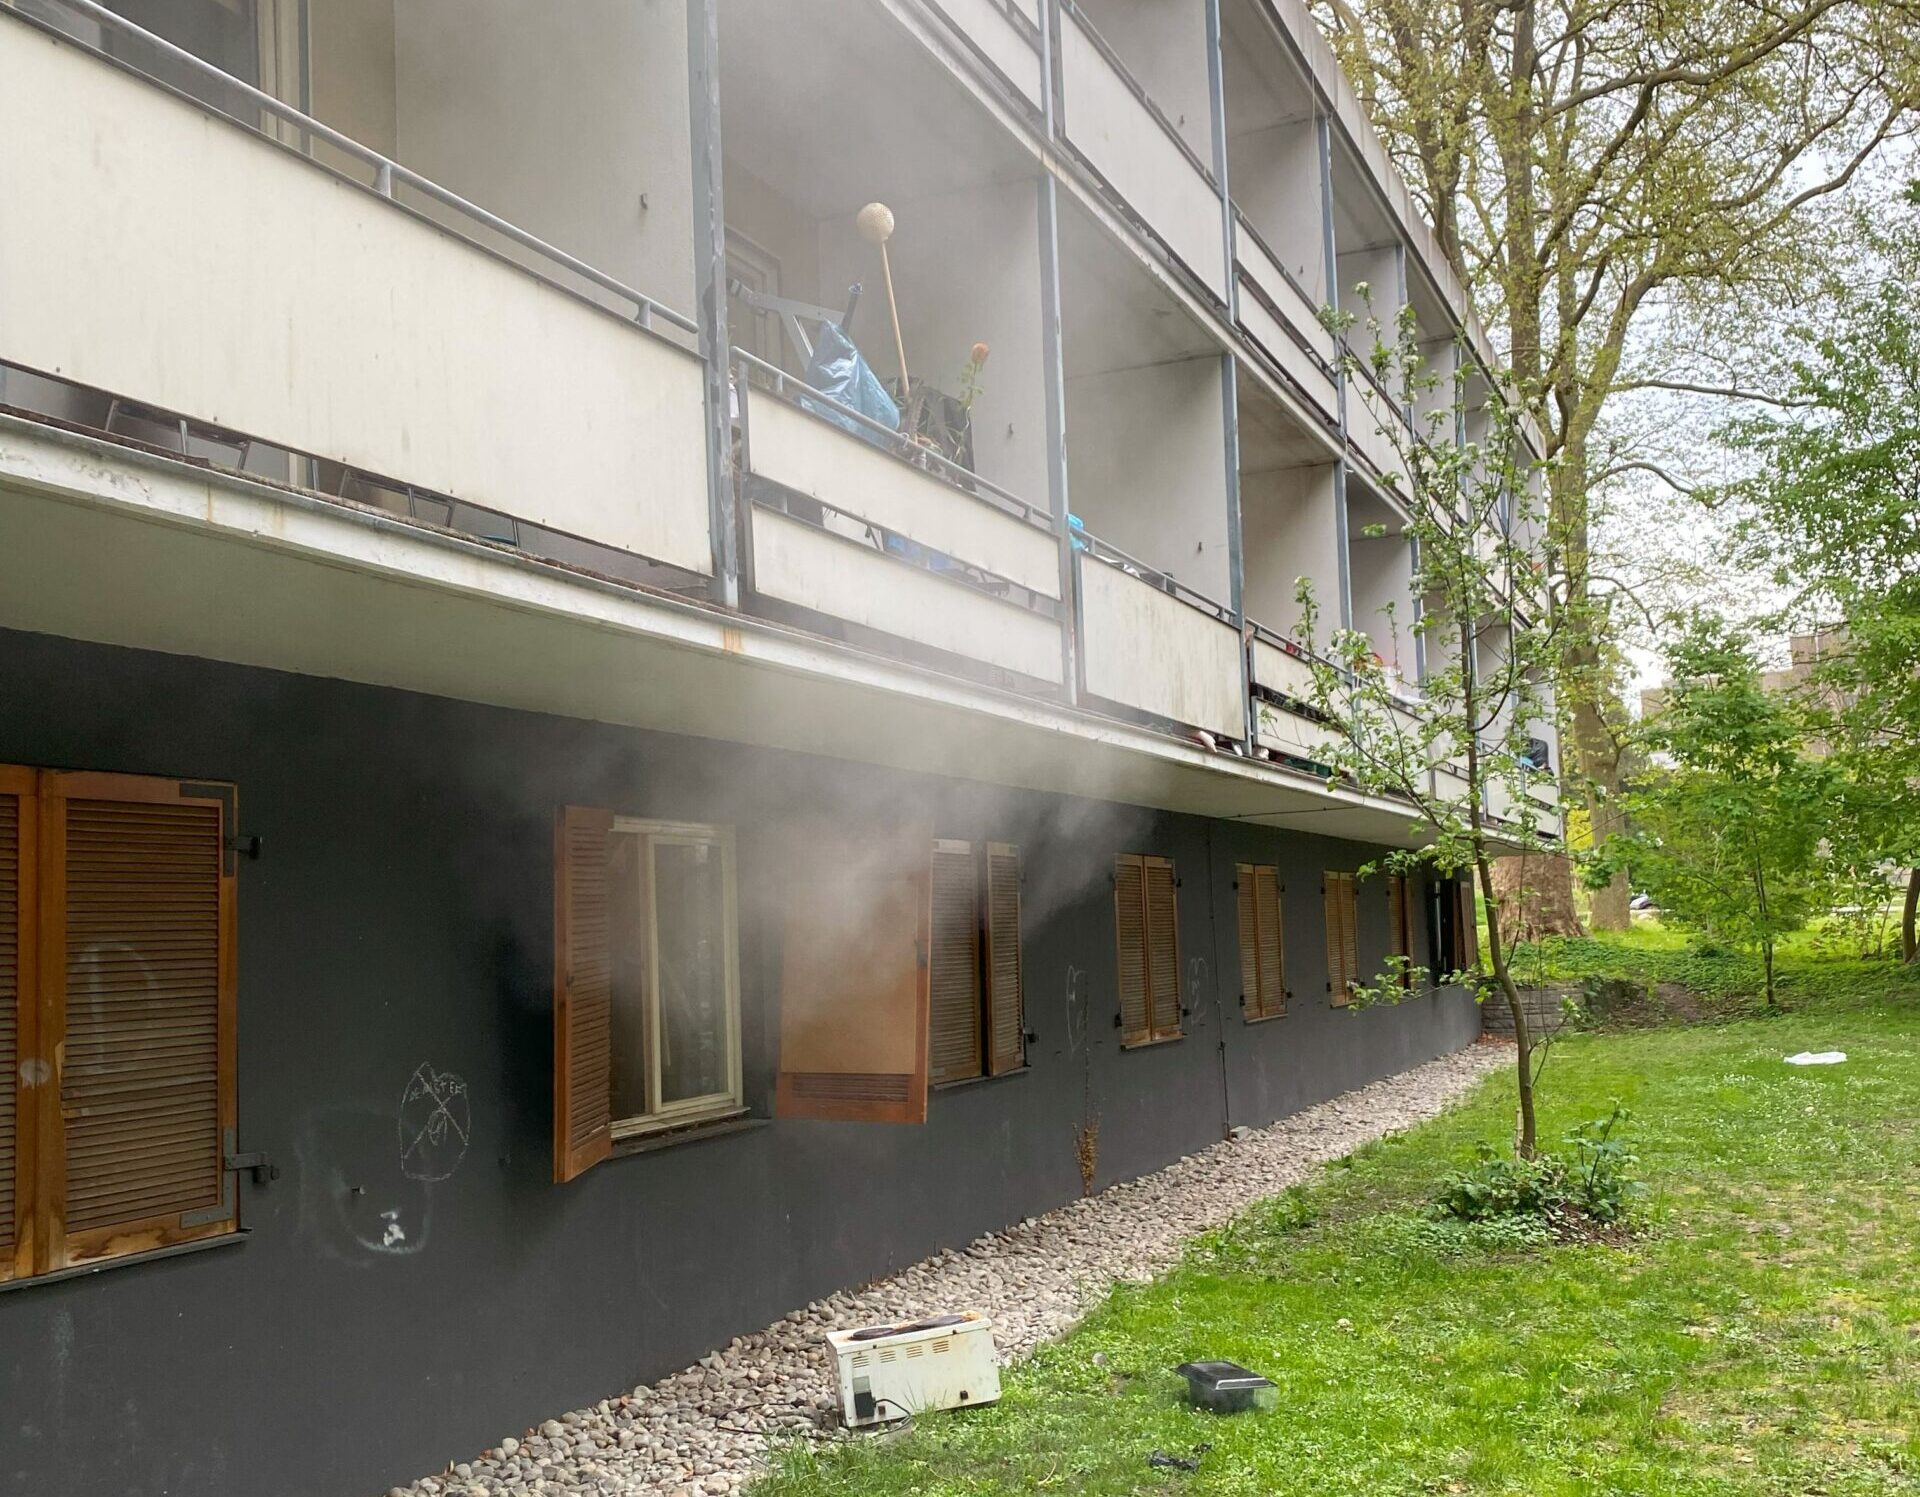 Konstanz: Brandmeldeanlage verhindert Zimmerbrand